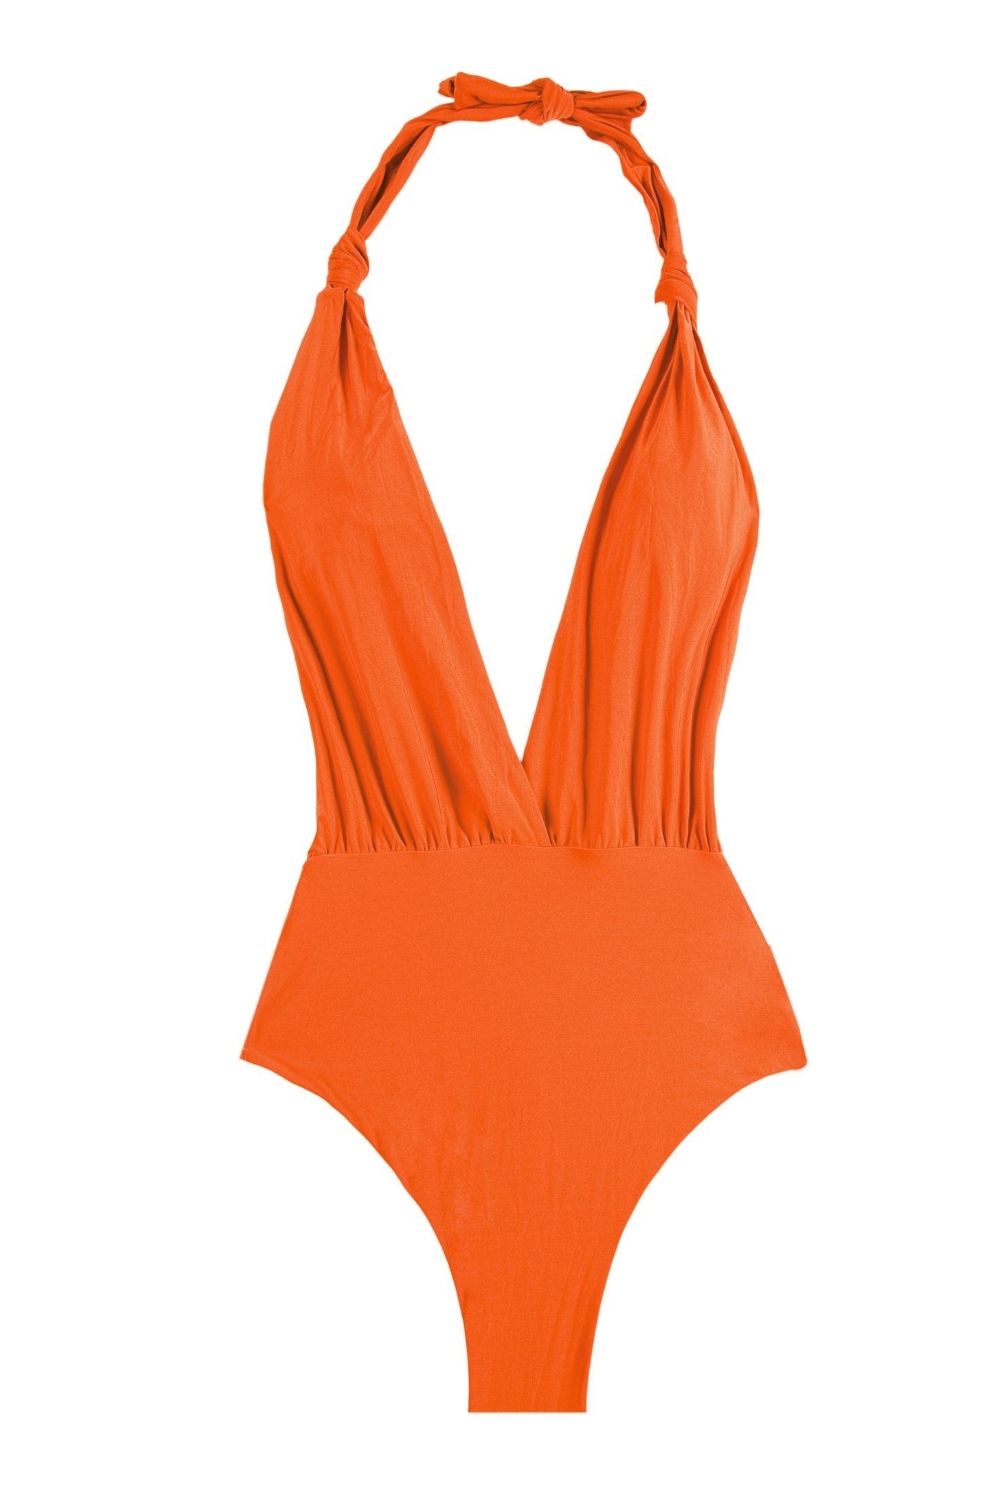 Top Trends in Swimwear for the Summertime - Gravetics